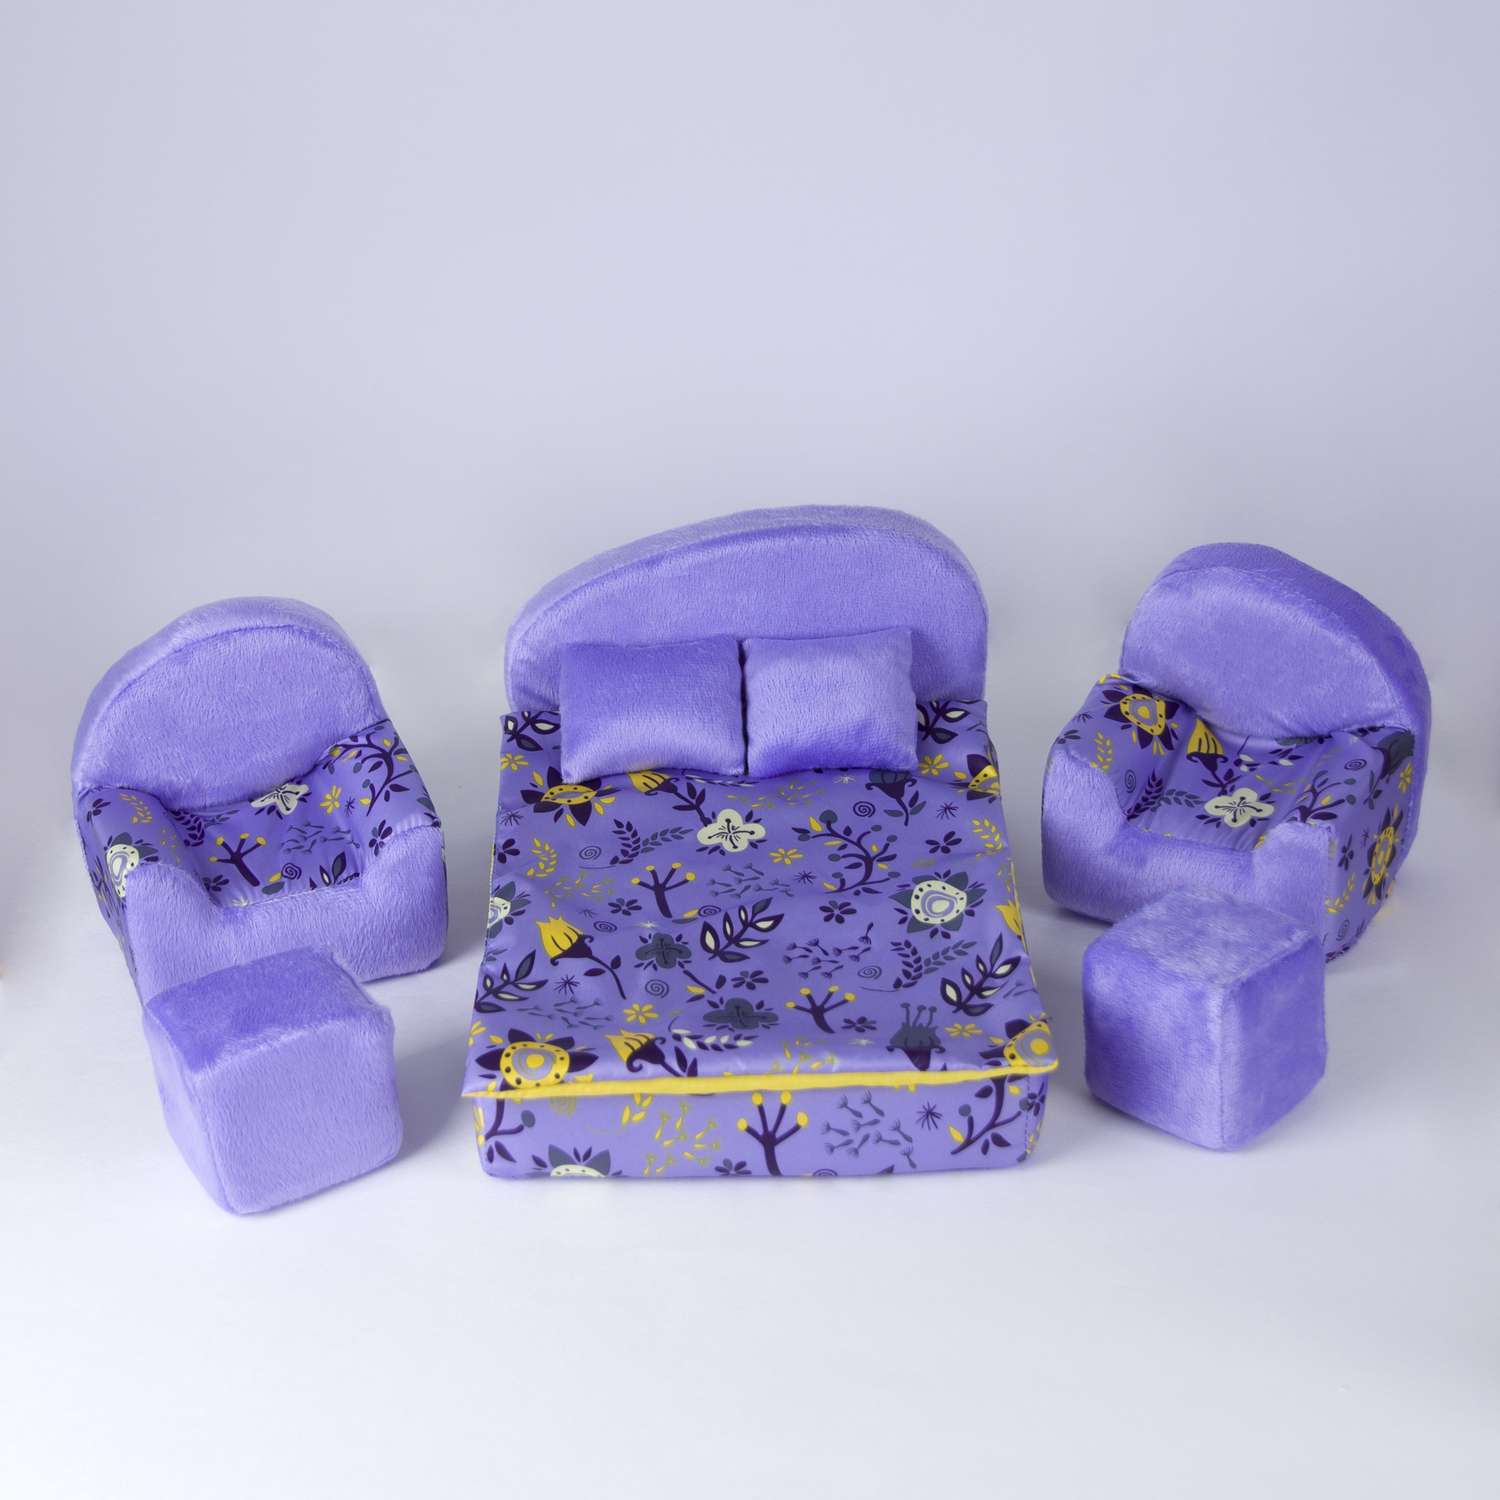 Набор мебели для кукол Belon familia кровать и 2 кресла/ принт конфета с сиреневым плюшем НМ-003/2-28 - фото 1